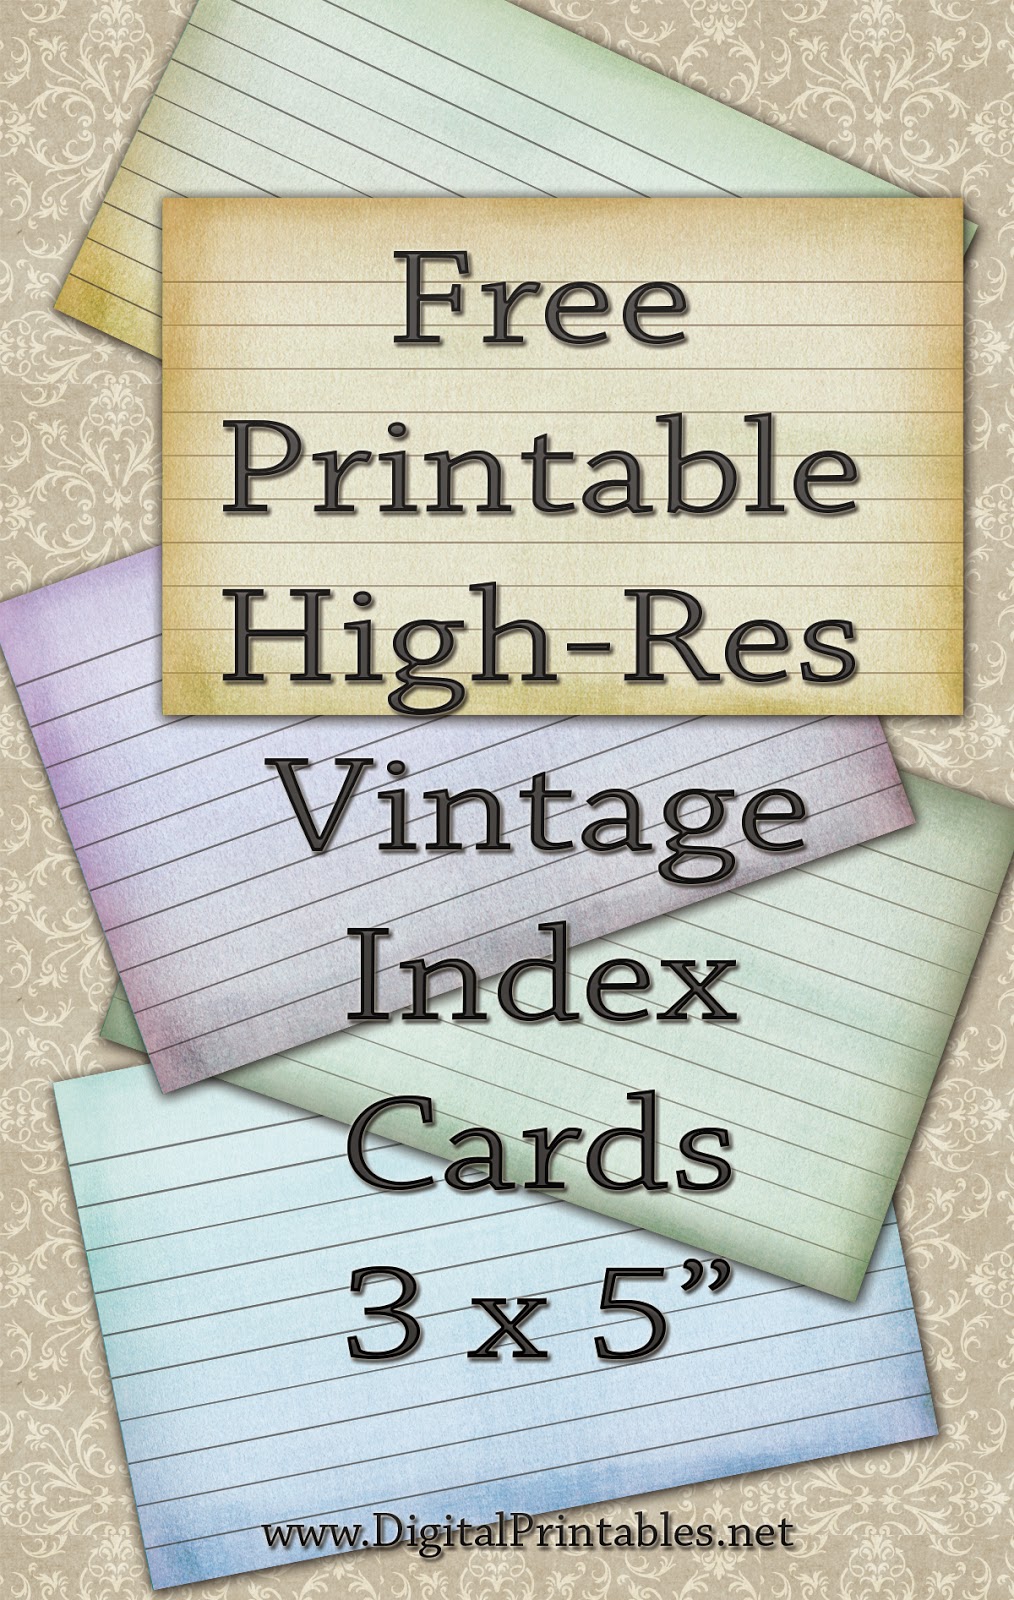 Digital Printables Free Printable Index Cards Vintage Look High Res